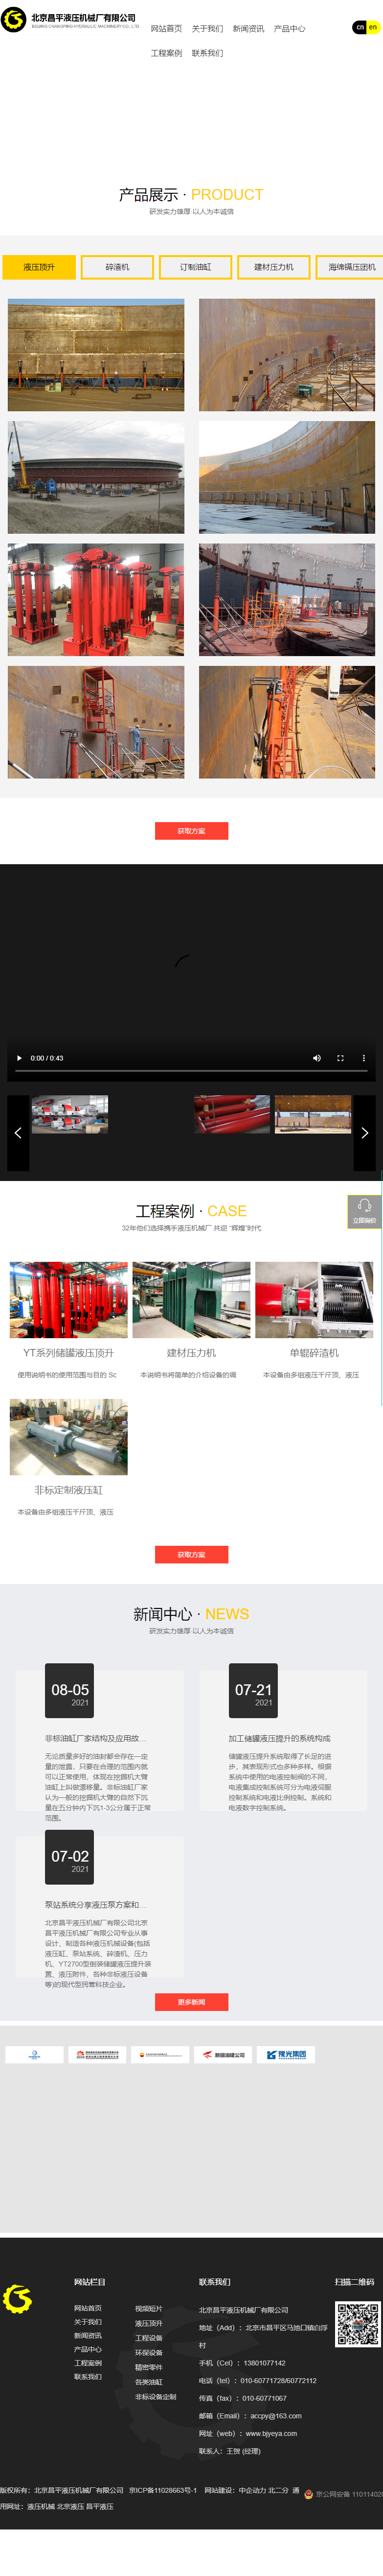 北京昌平液压机械厂有限公司网站案例